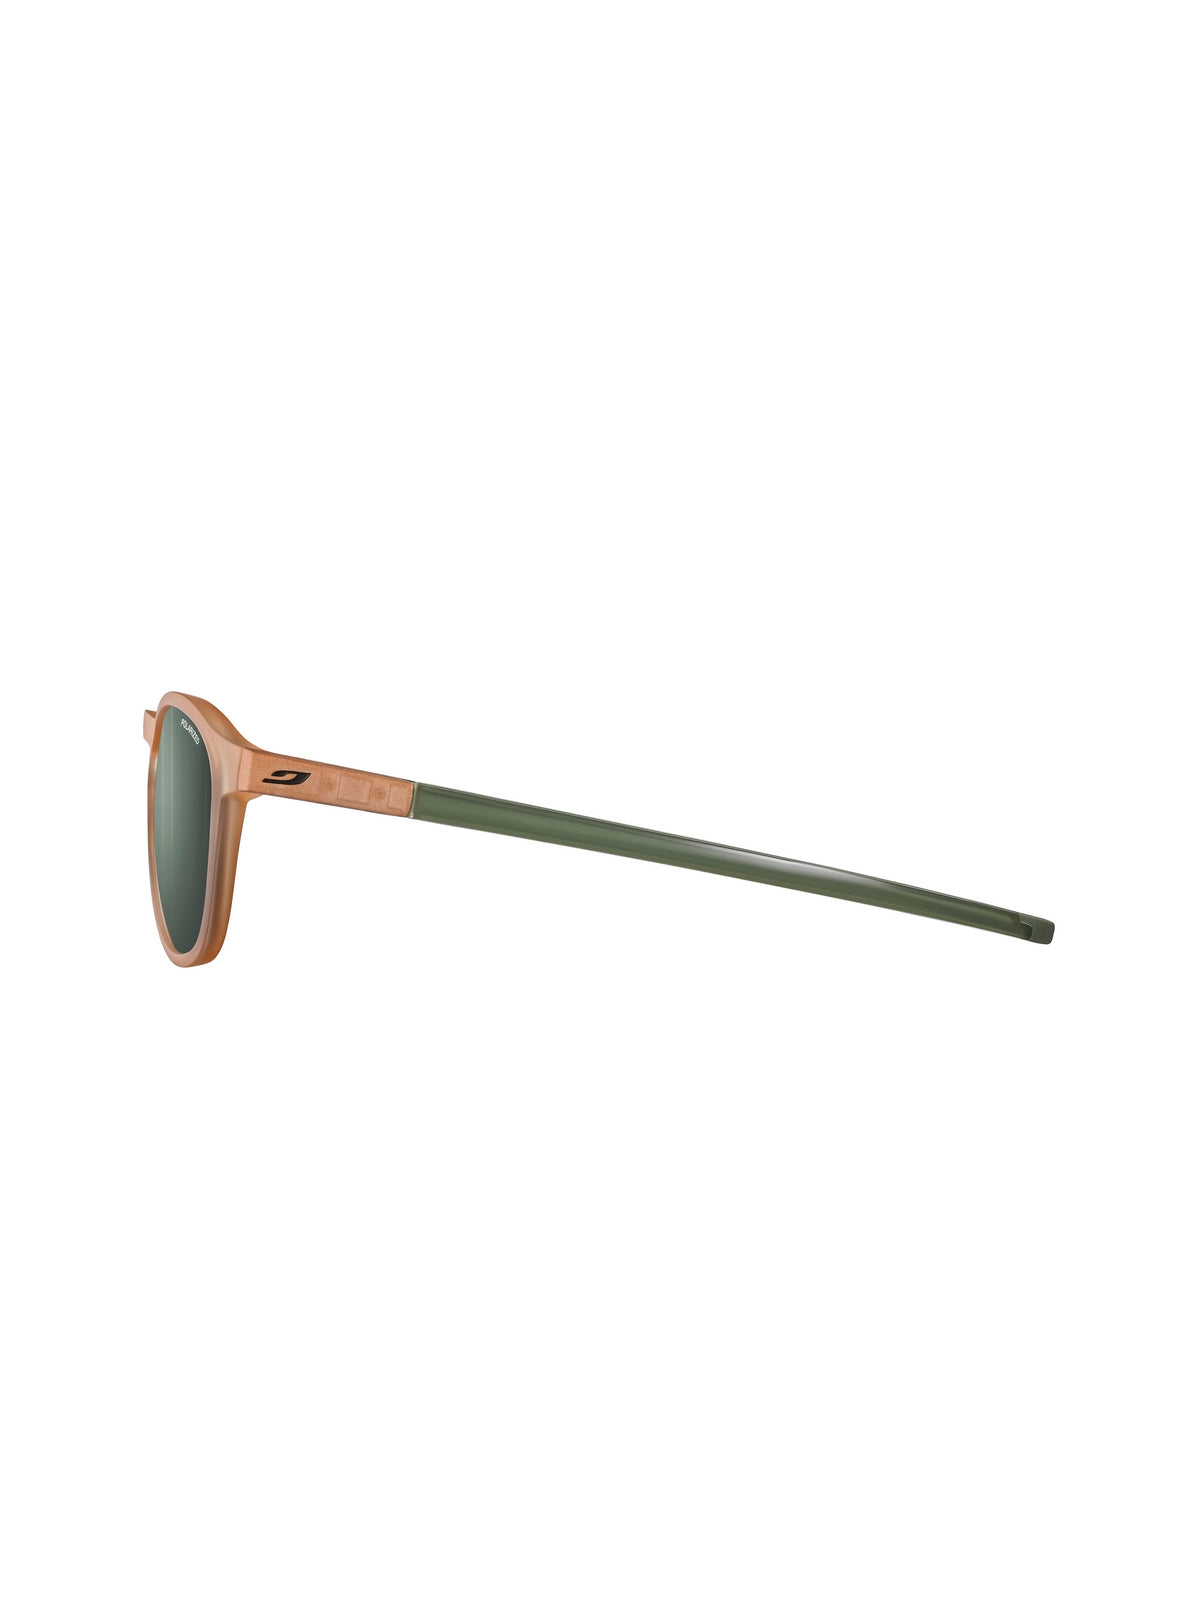 Okulary przeciwsłoneczne Julbo SHINE - brązowy/khaki | Spectron cat 3 Polarized